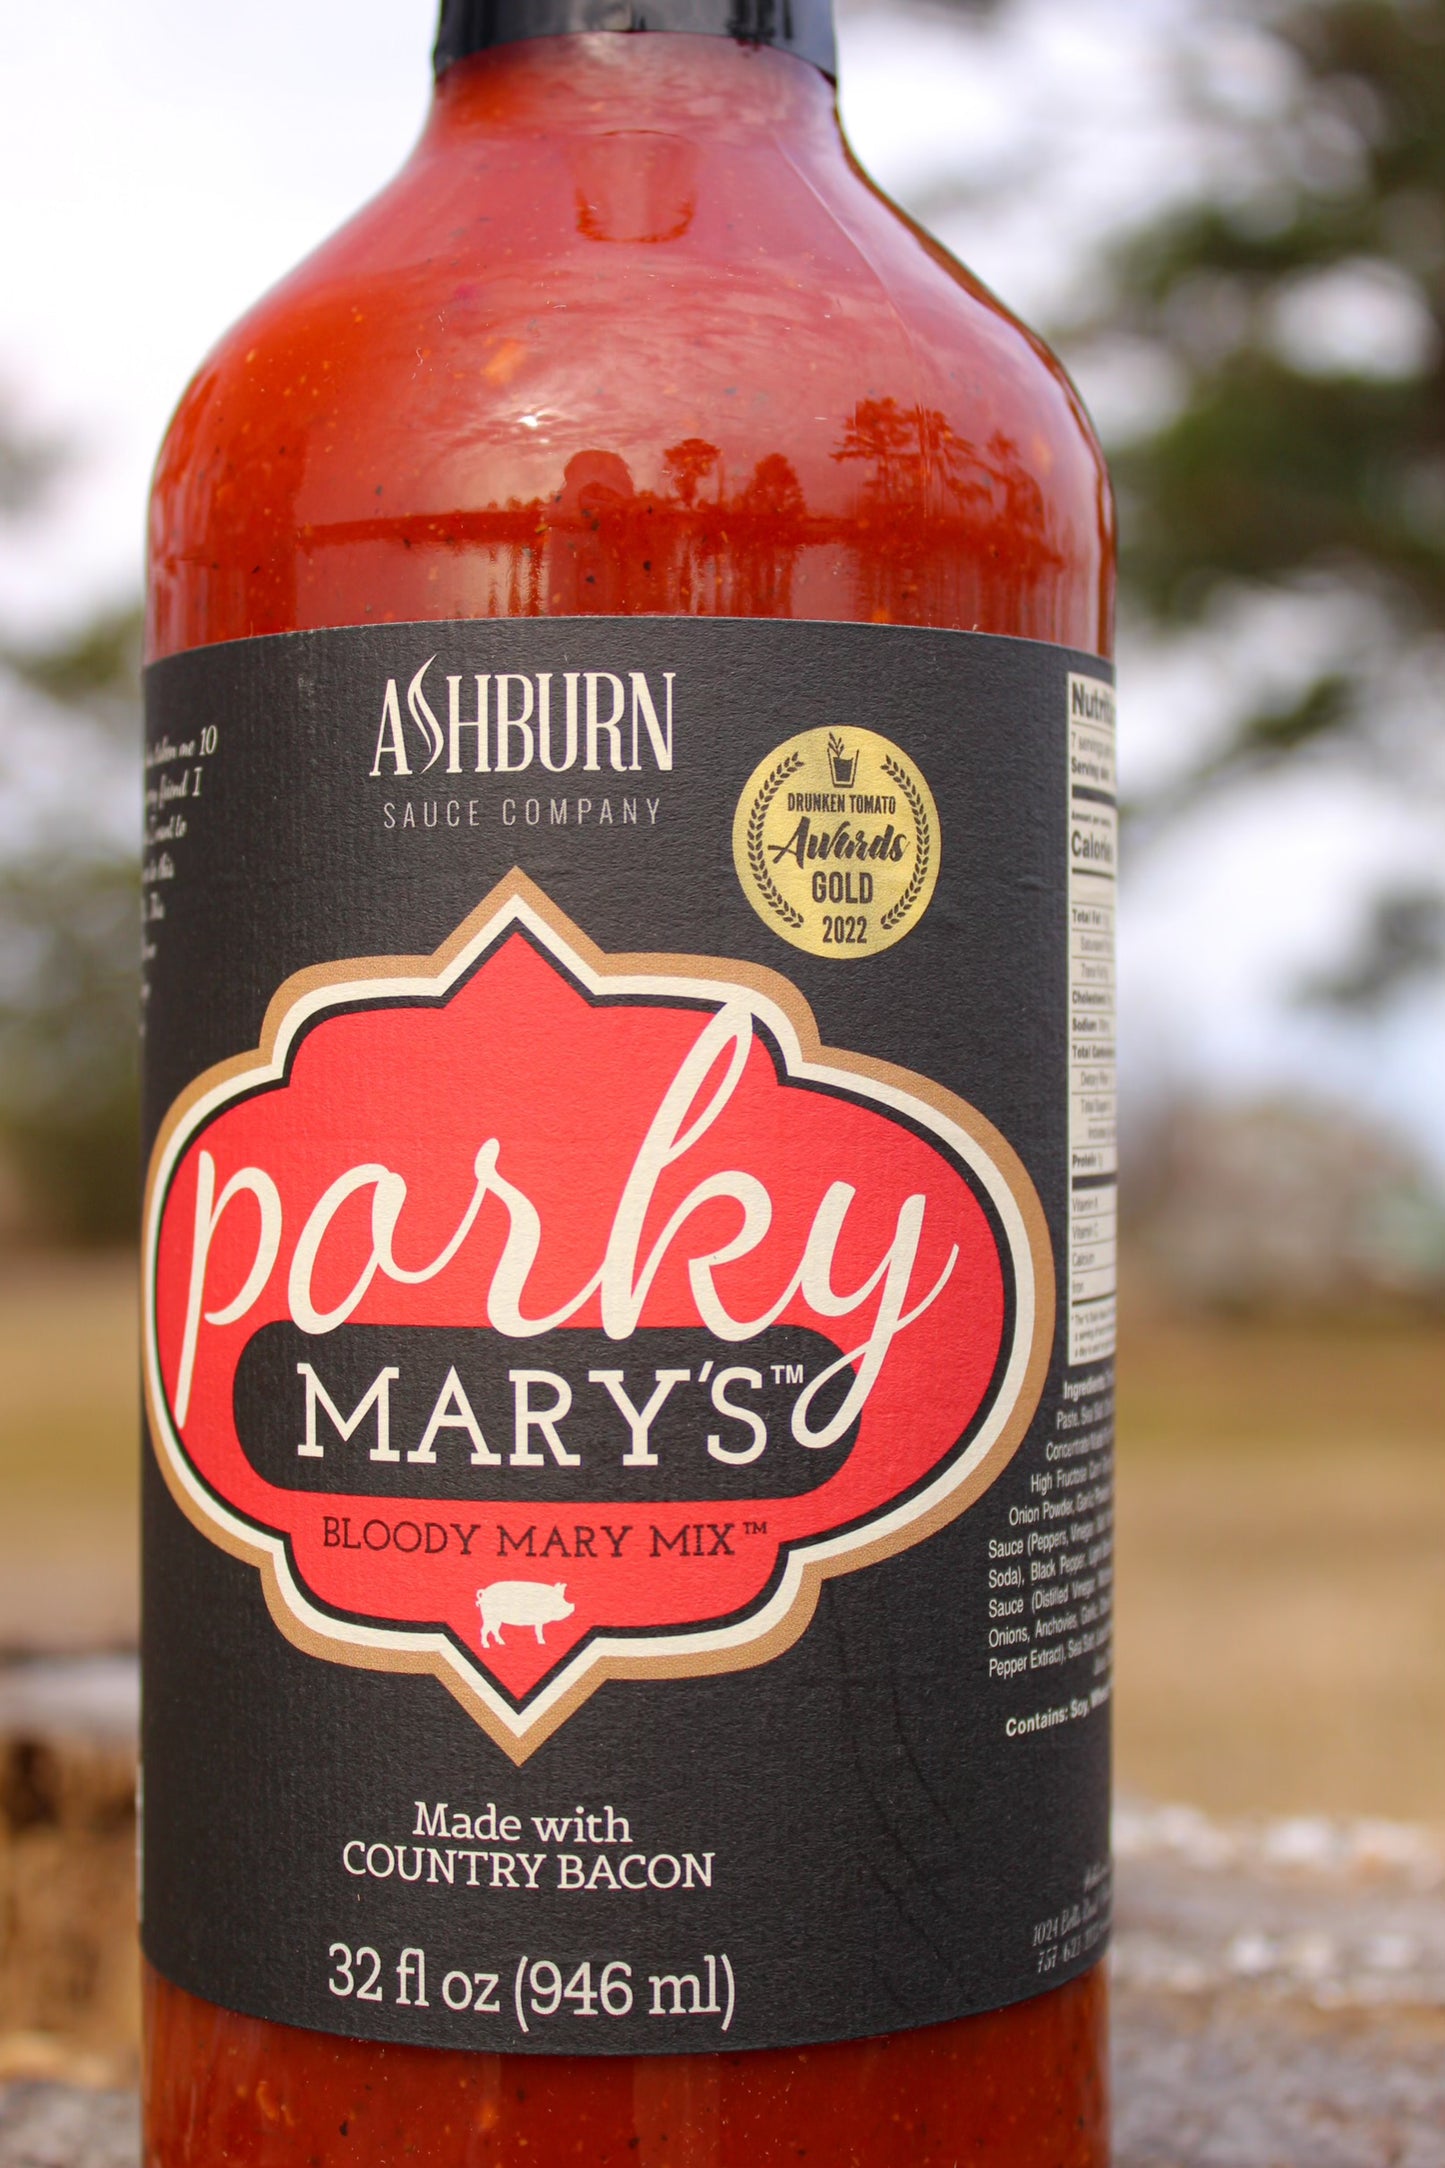 Ashburn Porky Mary's Bloody Mary Mix, 32 oz